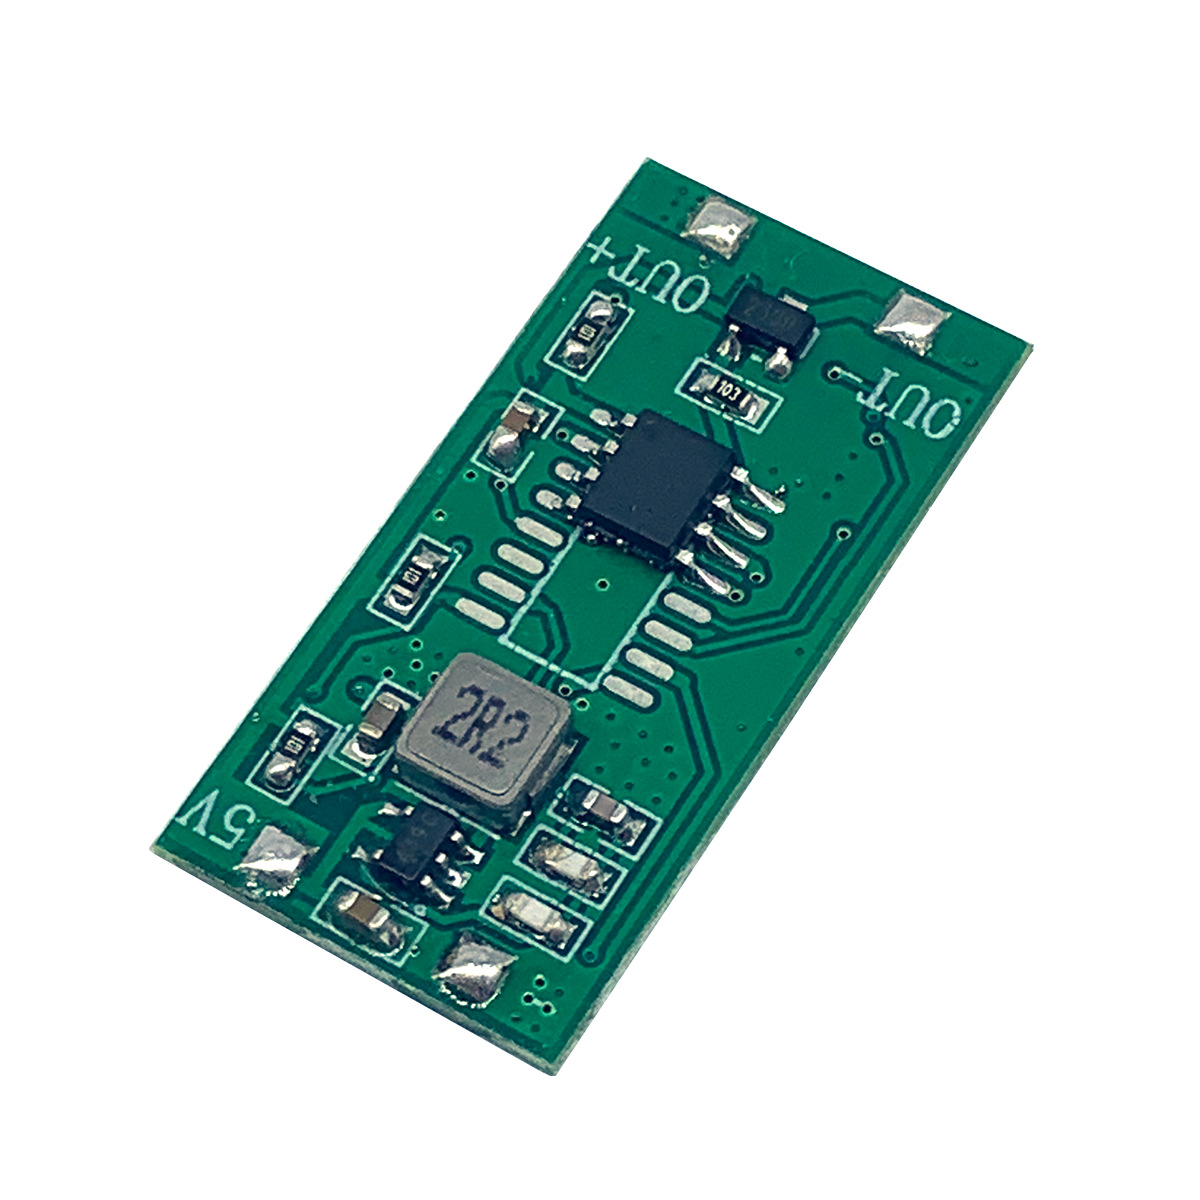 线控遥控 理疗仪调节器开关 PCBA电路主板方案设计定制开发